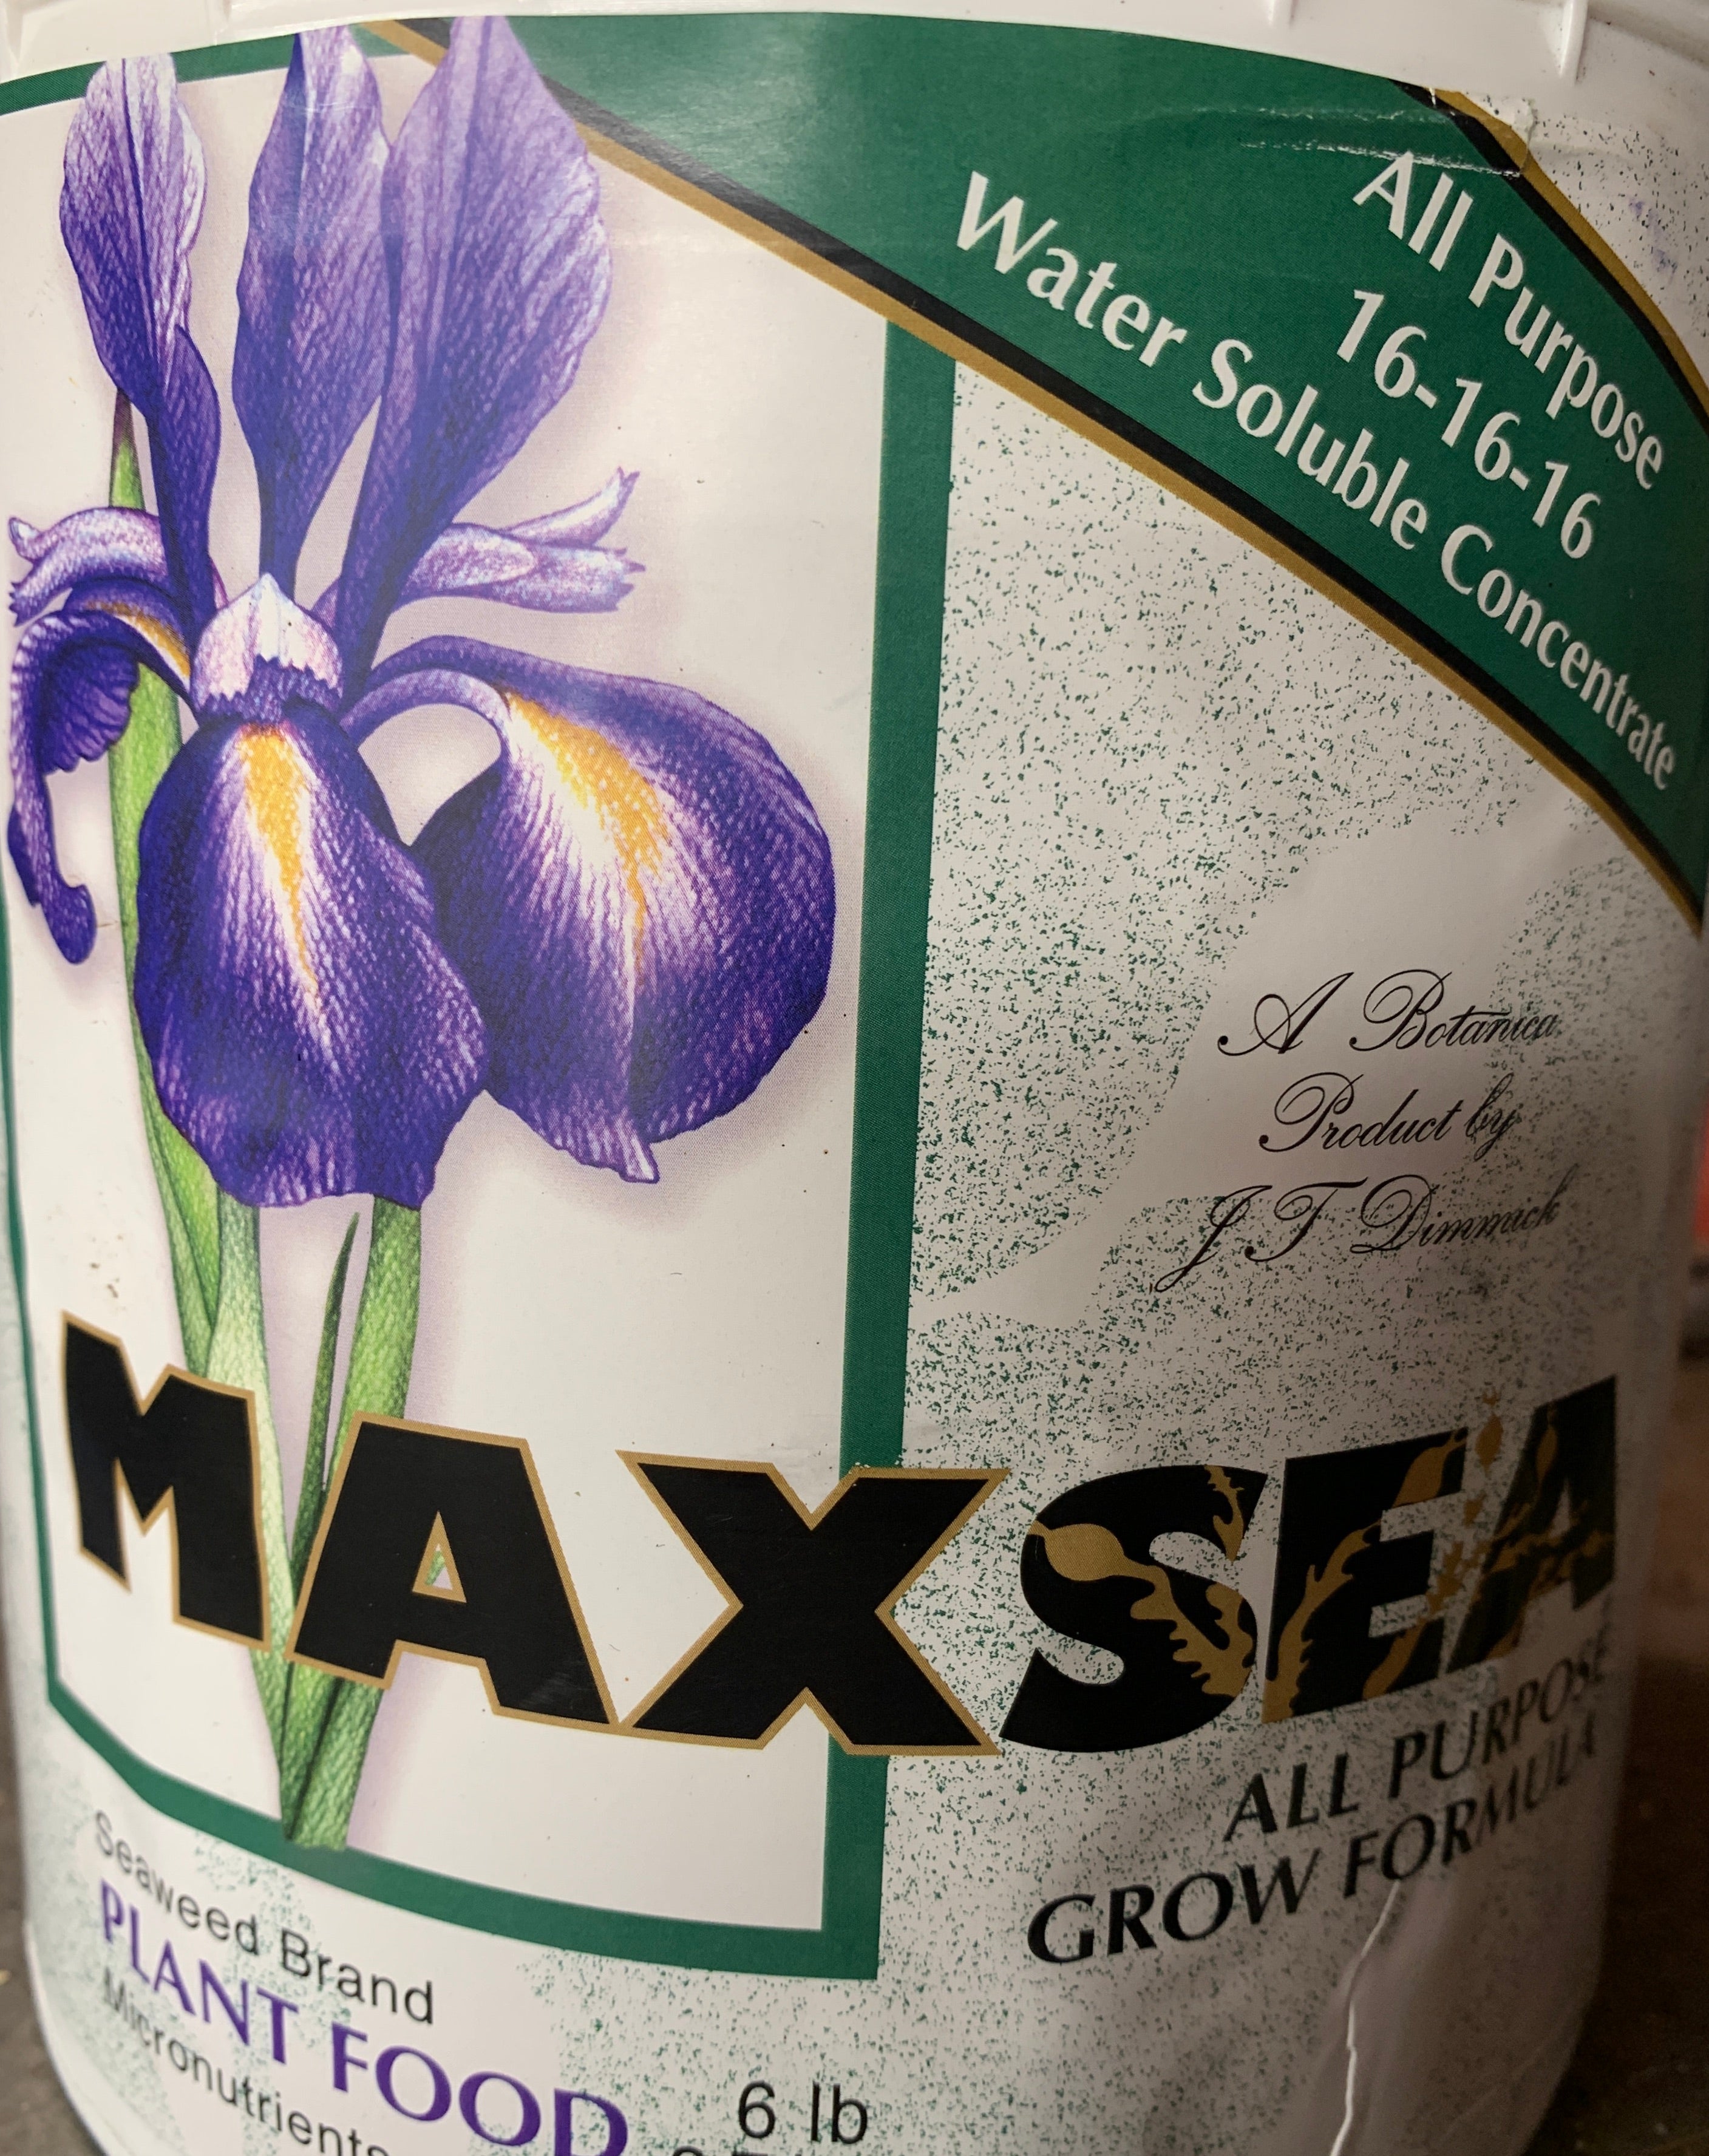 Maxsea Carnivorous Plant Fertilizer/Food (powder for 4 Liters/1 Gallon)